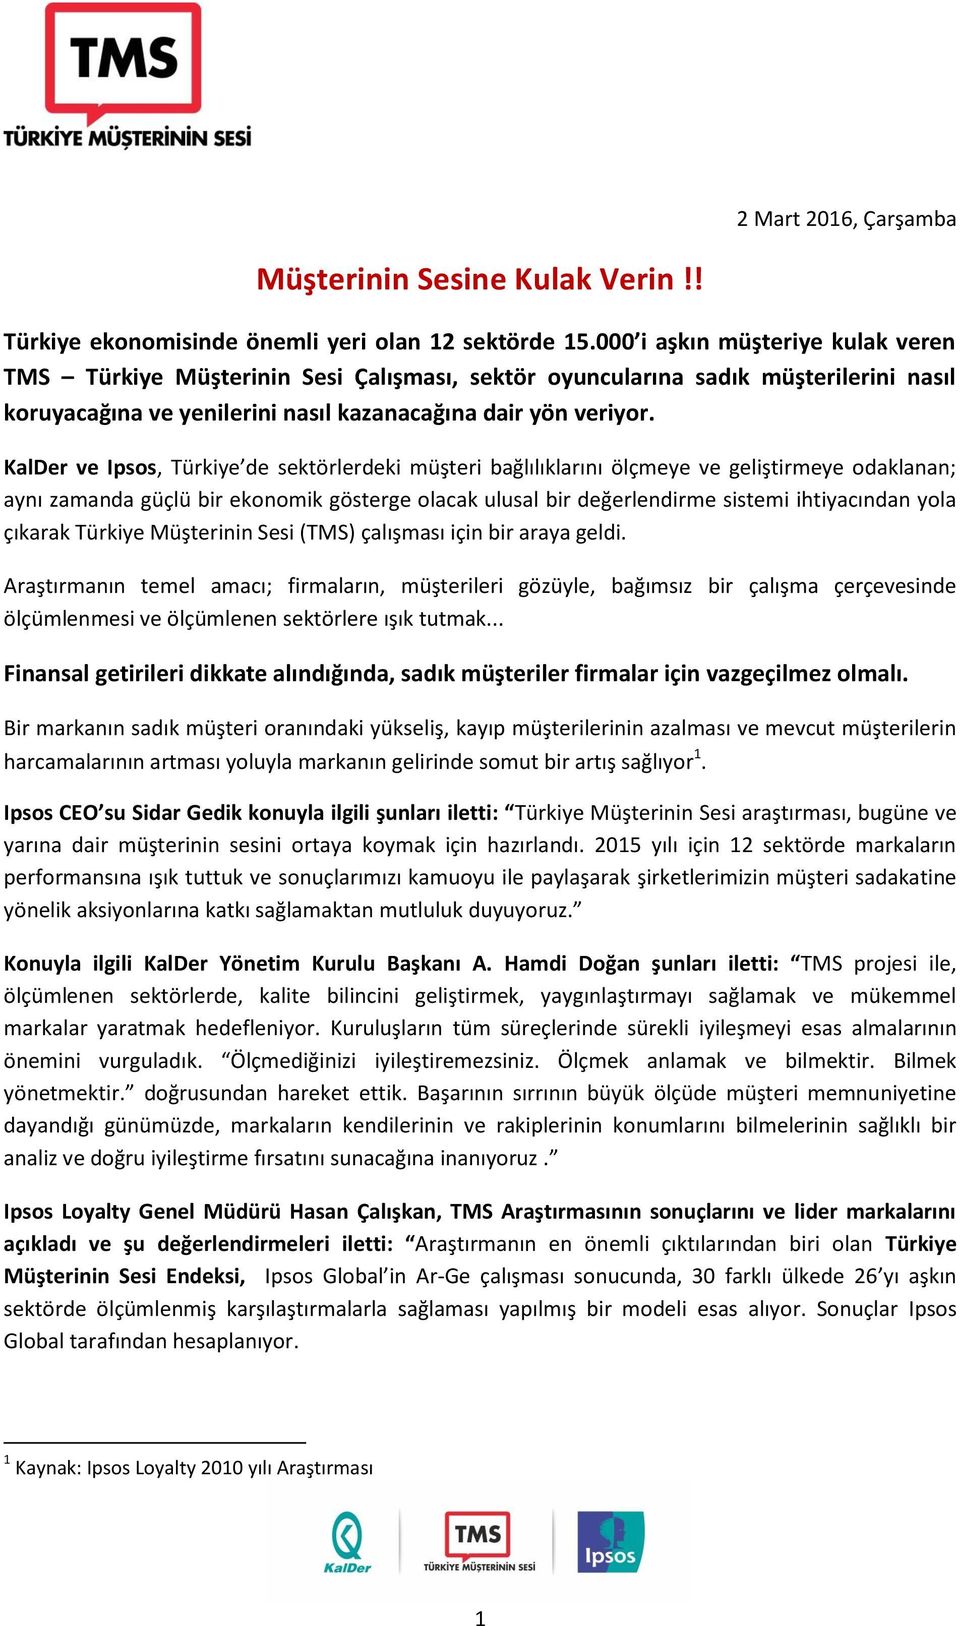 KalDer ve Ipsos, Türkiye de sektörlerdeki müşteri bağlılıklarını ölçmeye ve geliştirmeye odaklanan; aynı zamanda güçlü bir ekonomik gösterge olacak ulusal bir değerlendirme sistemi ihtiyacından yola